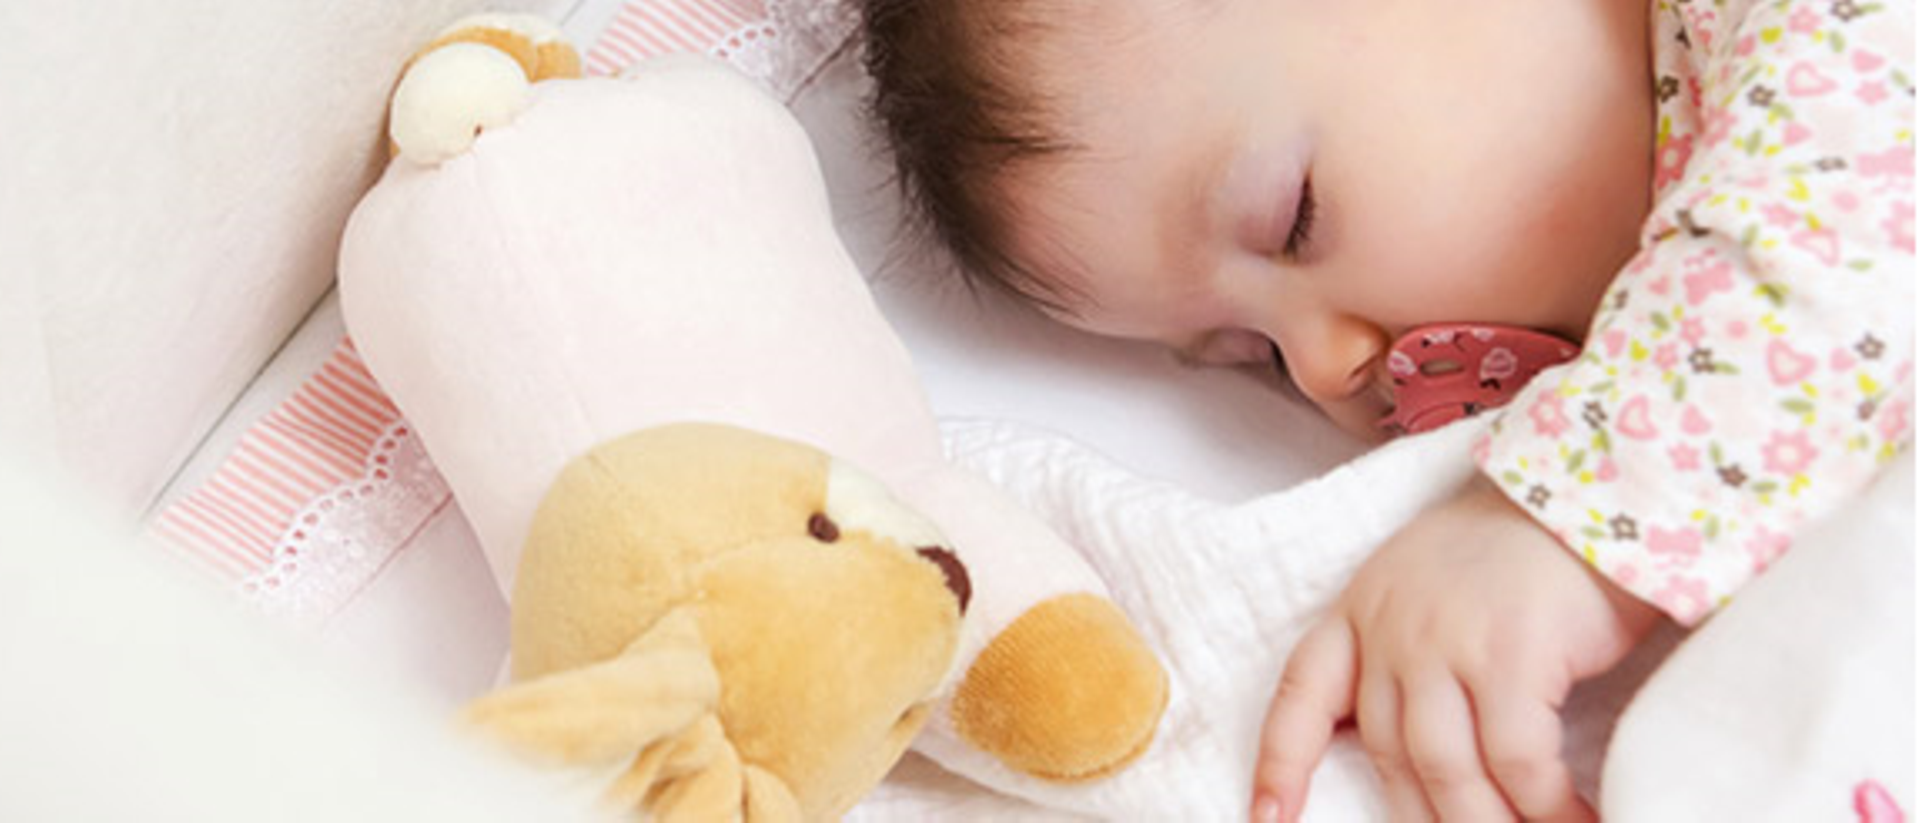 Wir zeigen Ihnen die wichtigsten Pflege-Tipps rund ums Kinderbett. 